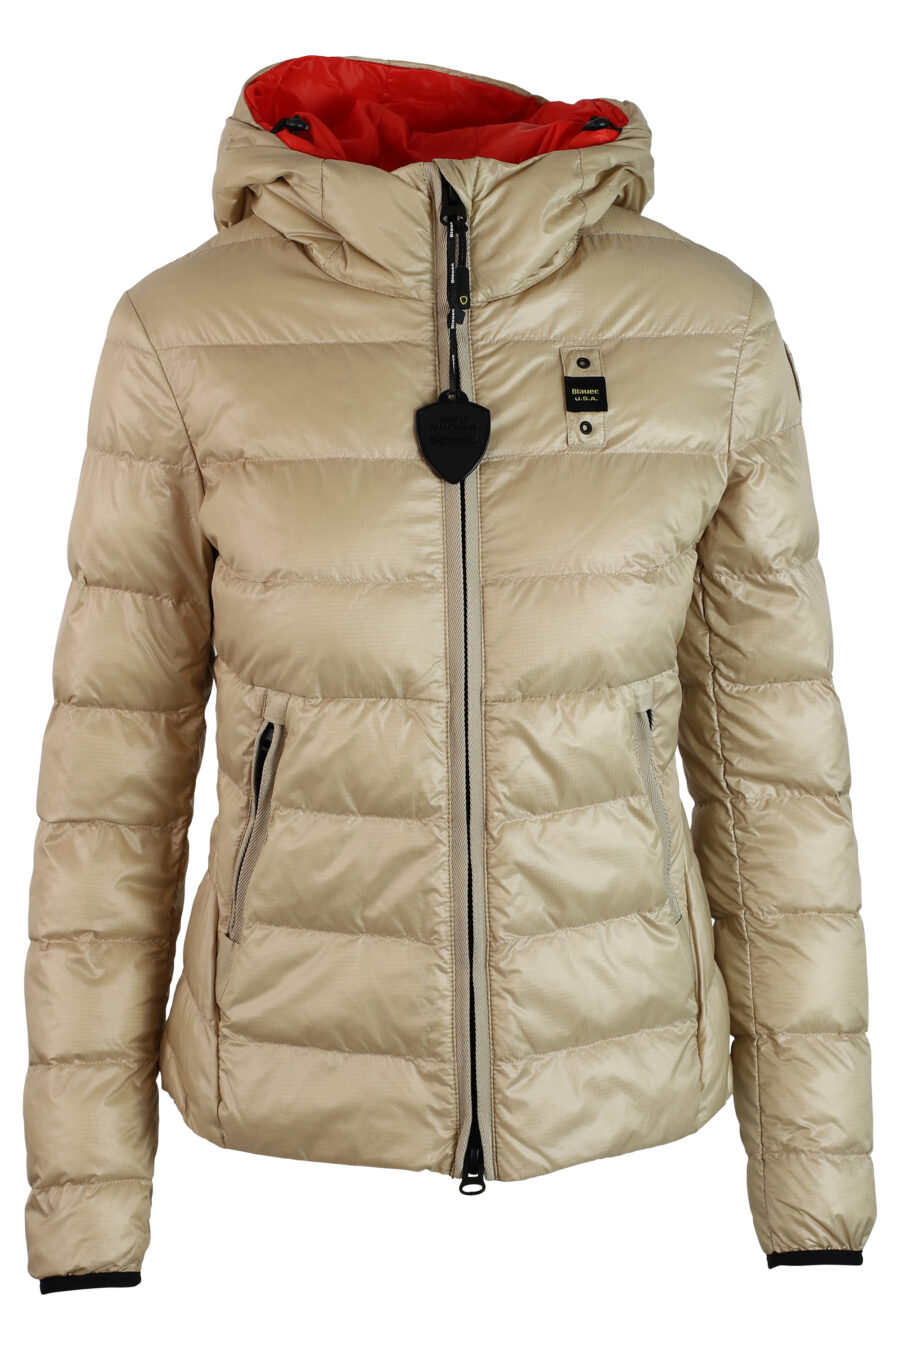 Beigefarbene kurze Jacke mit Kapuze und geraden Linien - IMG 0220